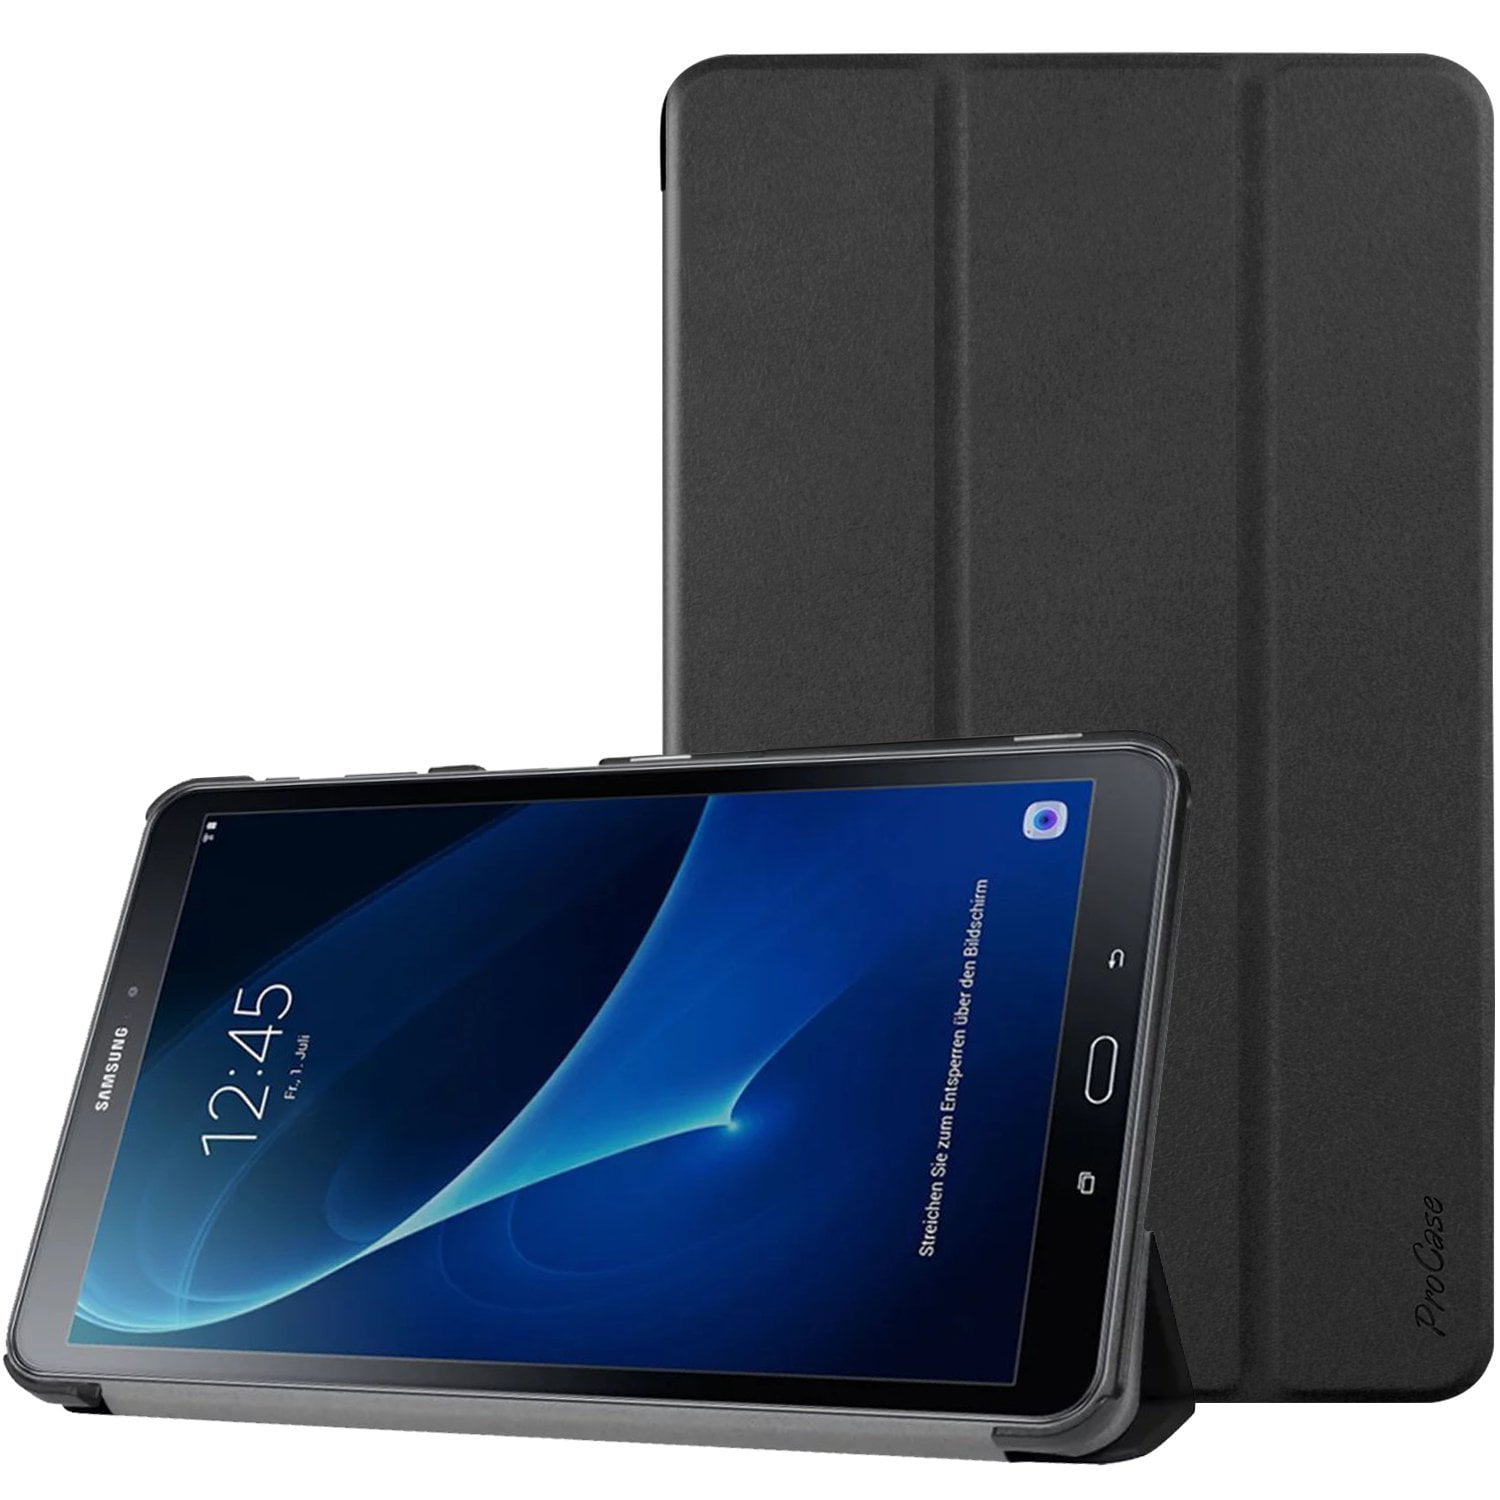 Samsung Galaxy Tab A 10.1 Case, Slim Smart Cover Stand Folio Case for Galaxy Tab A 10.1 Inch